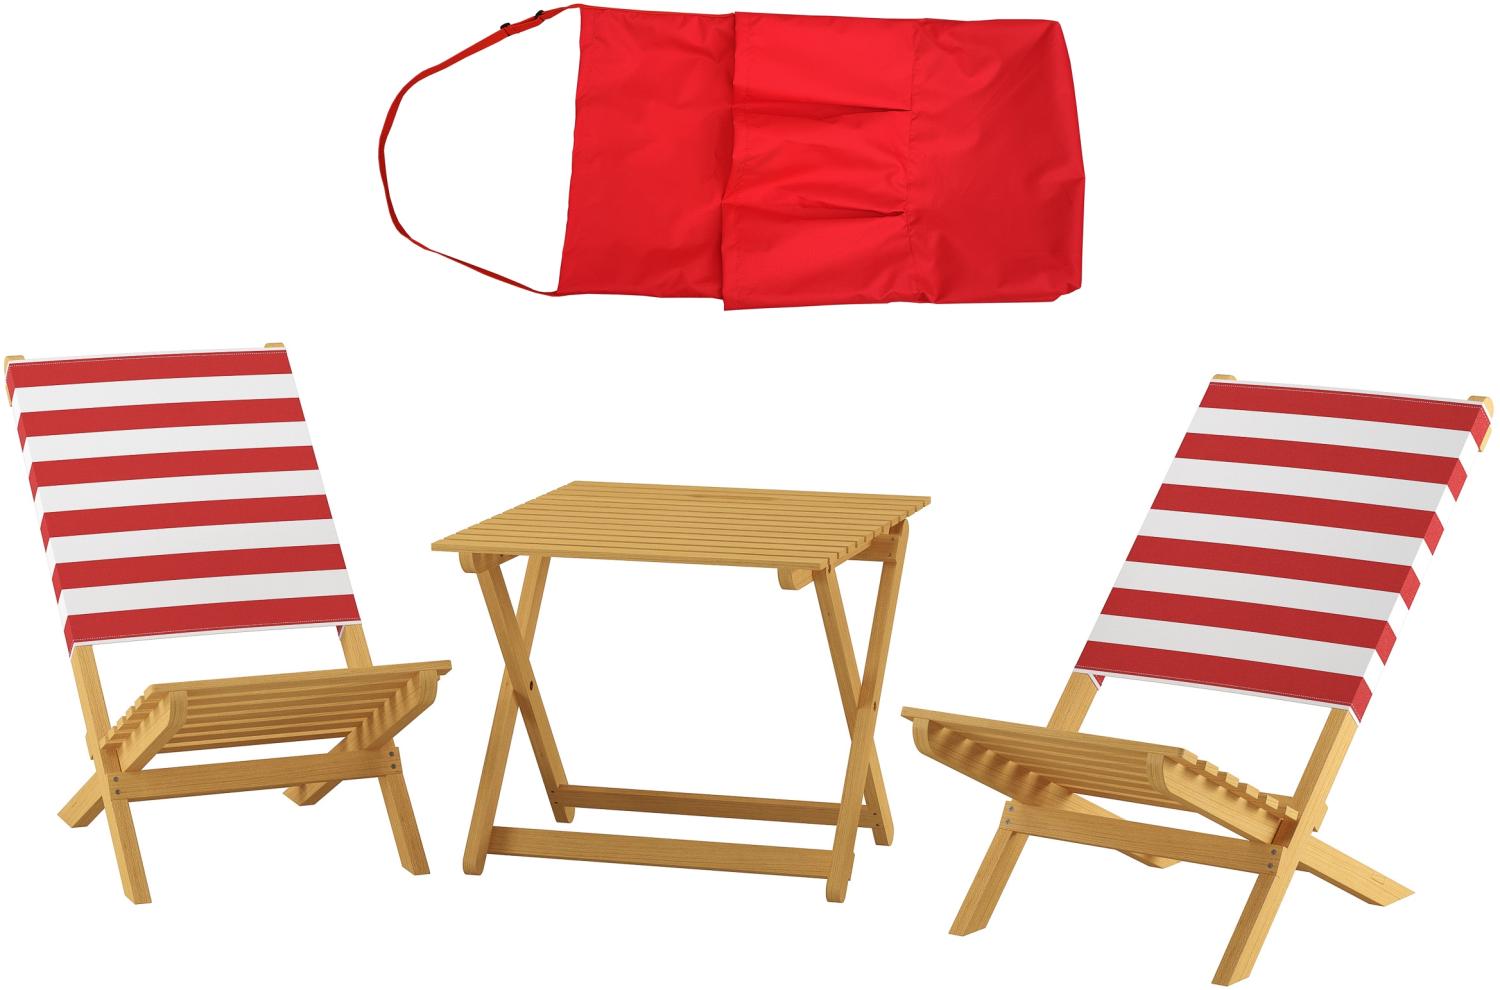 Klappstuhl Strandstuhl Anglerstuhl Gartenstuhl Stuhl zum Zusammenstecken rot-weißem Bezug V-10-353 Bild 1